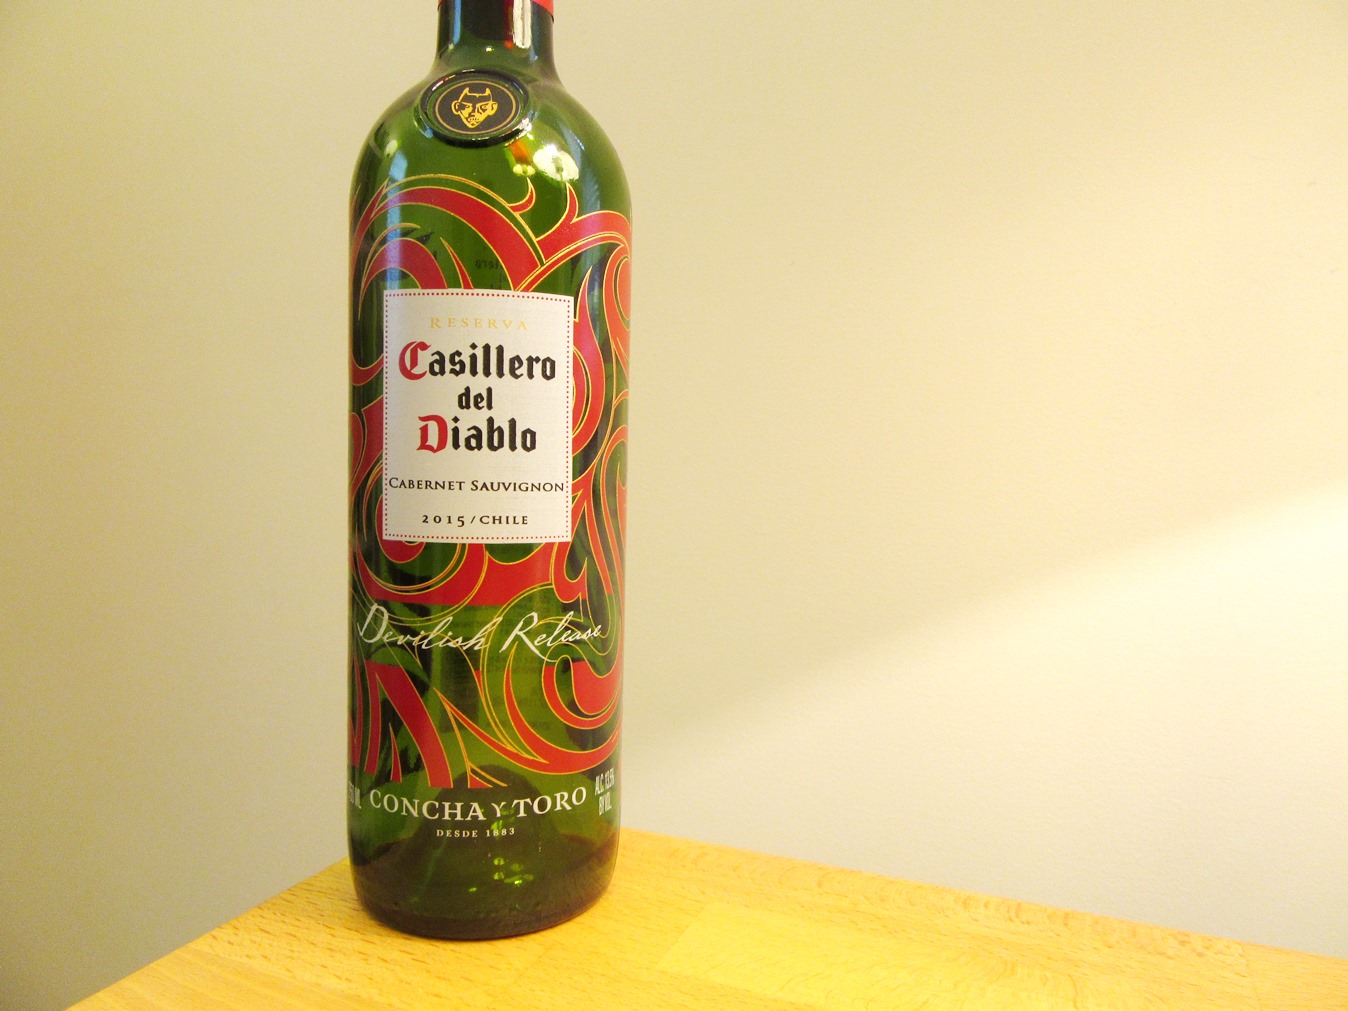 Photo Credit: Wine Casual, Concho Y Toro Casillero del Diablo, Devilish Release Reserva Cabernet Sauvignon 2015, Chile